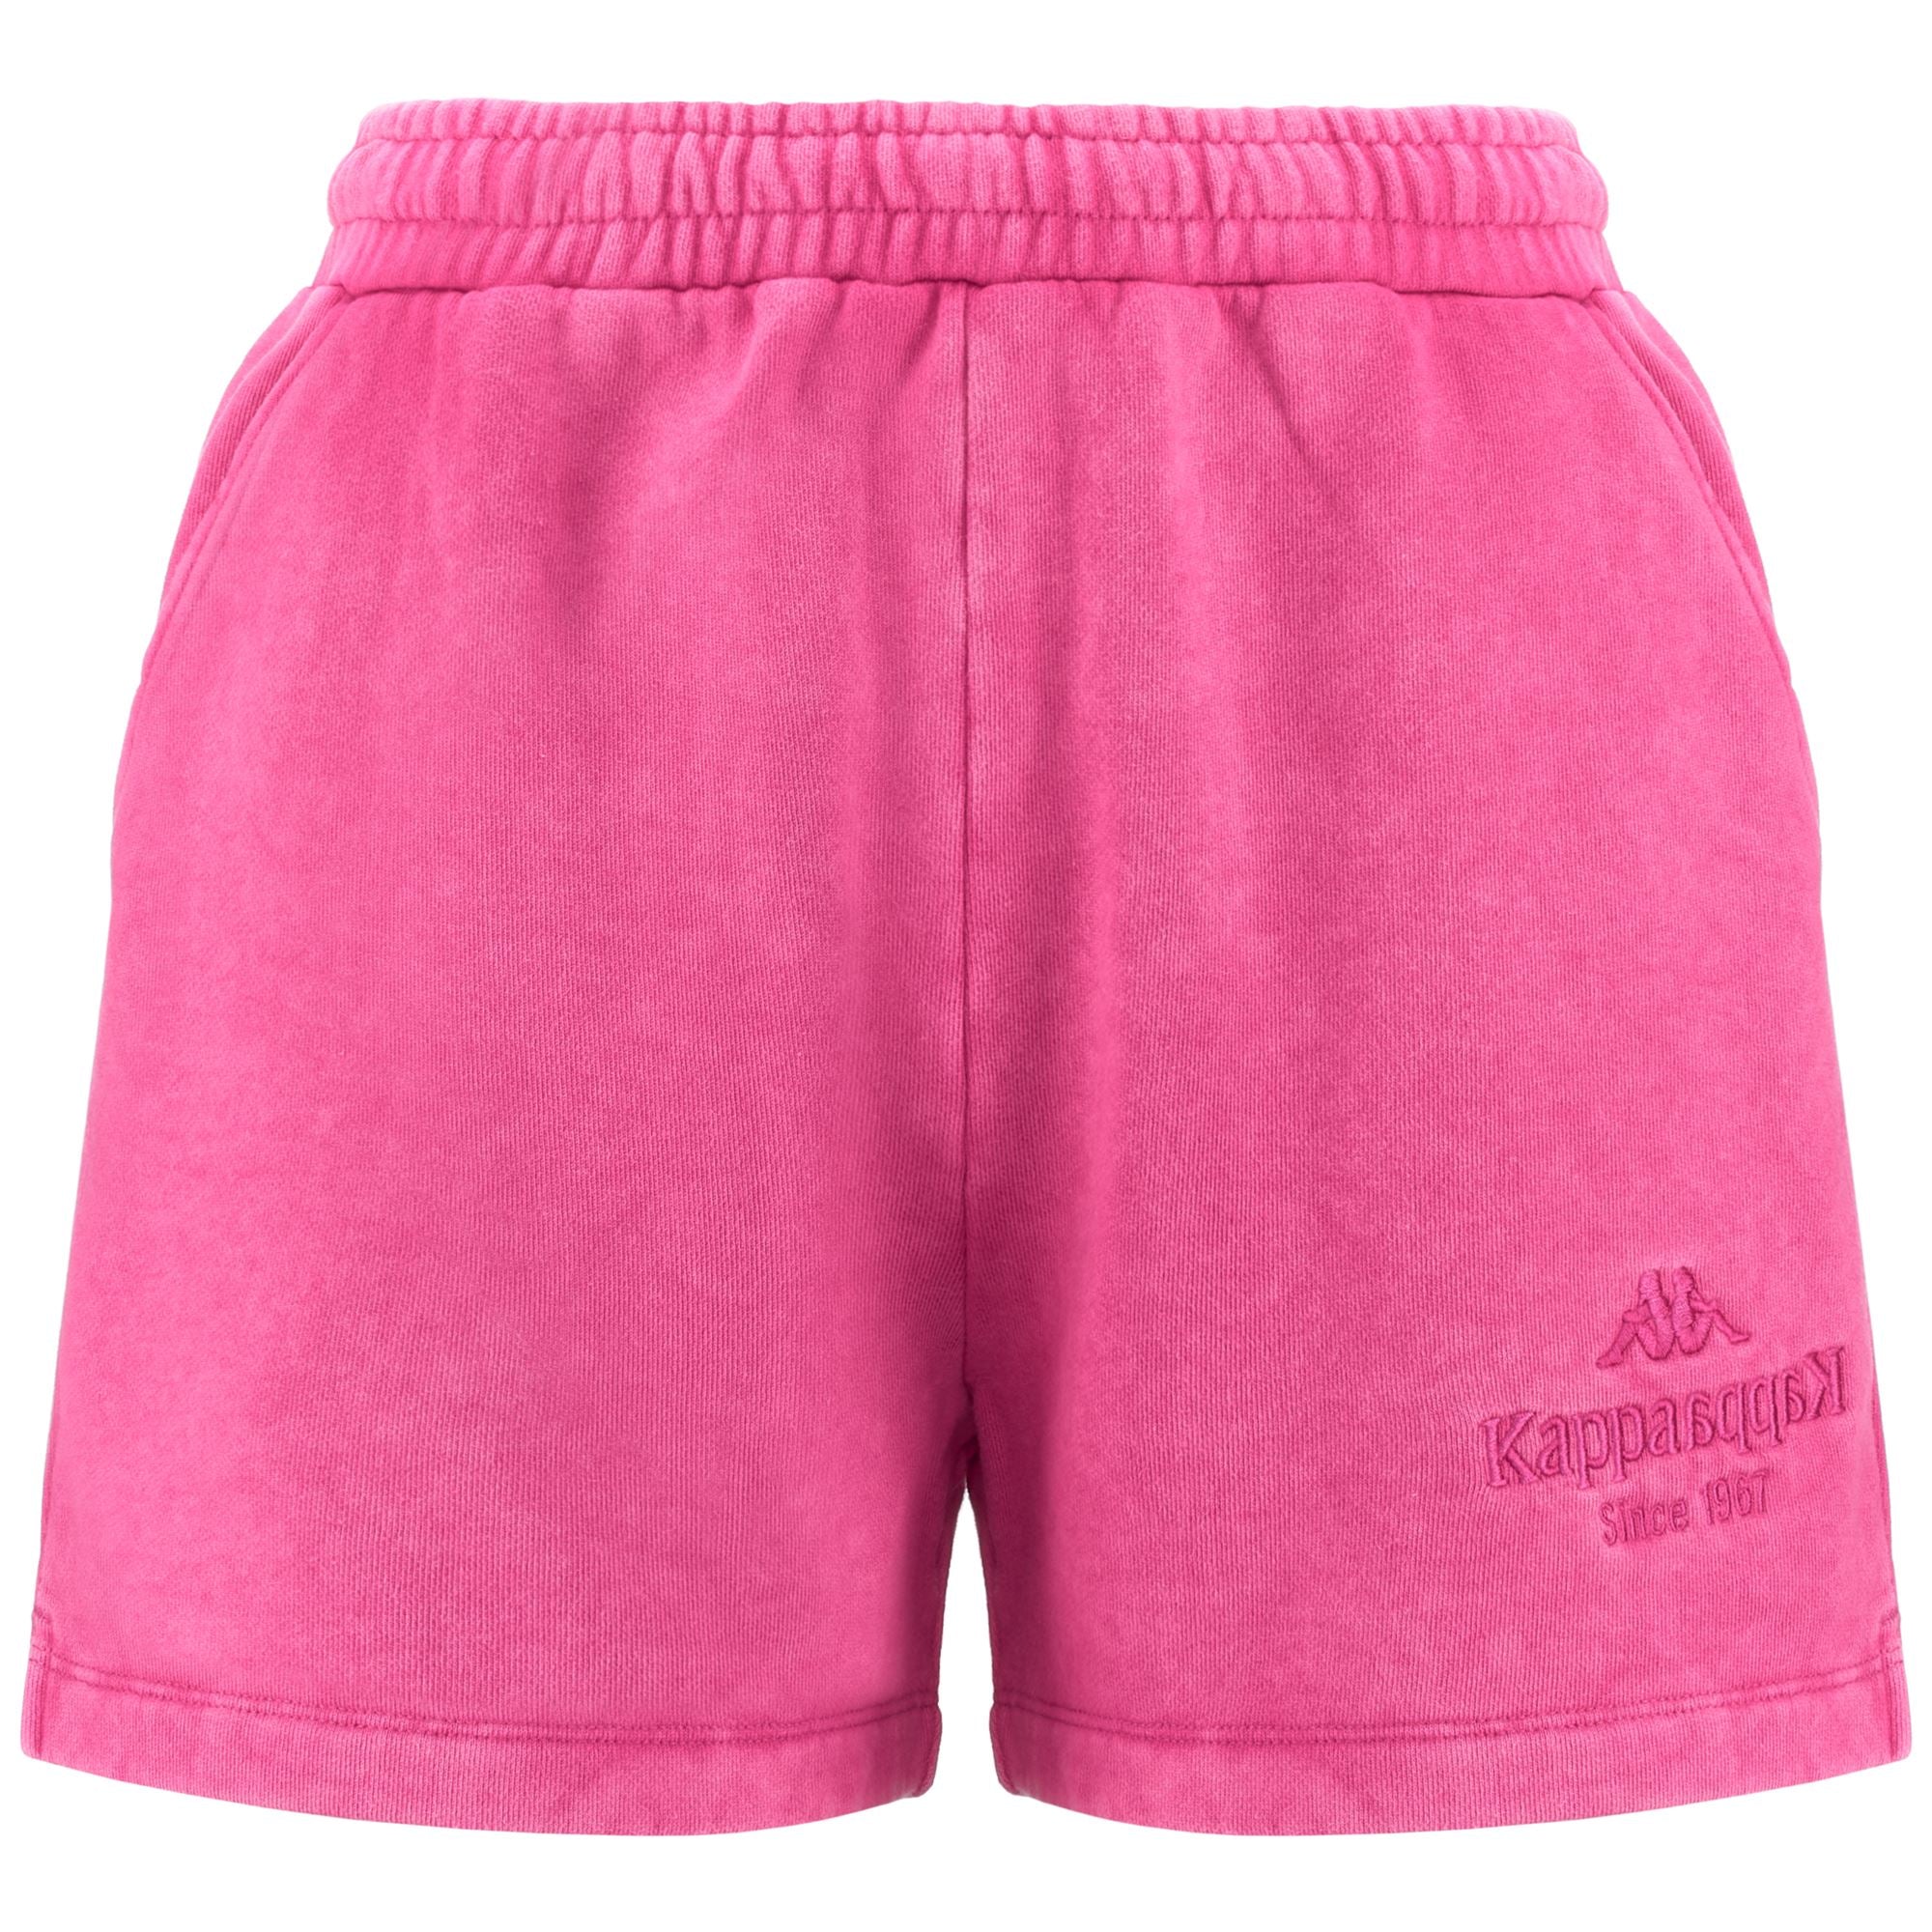 Women's shorts: discover Kappa shorts for women – Kappa.com